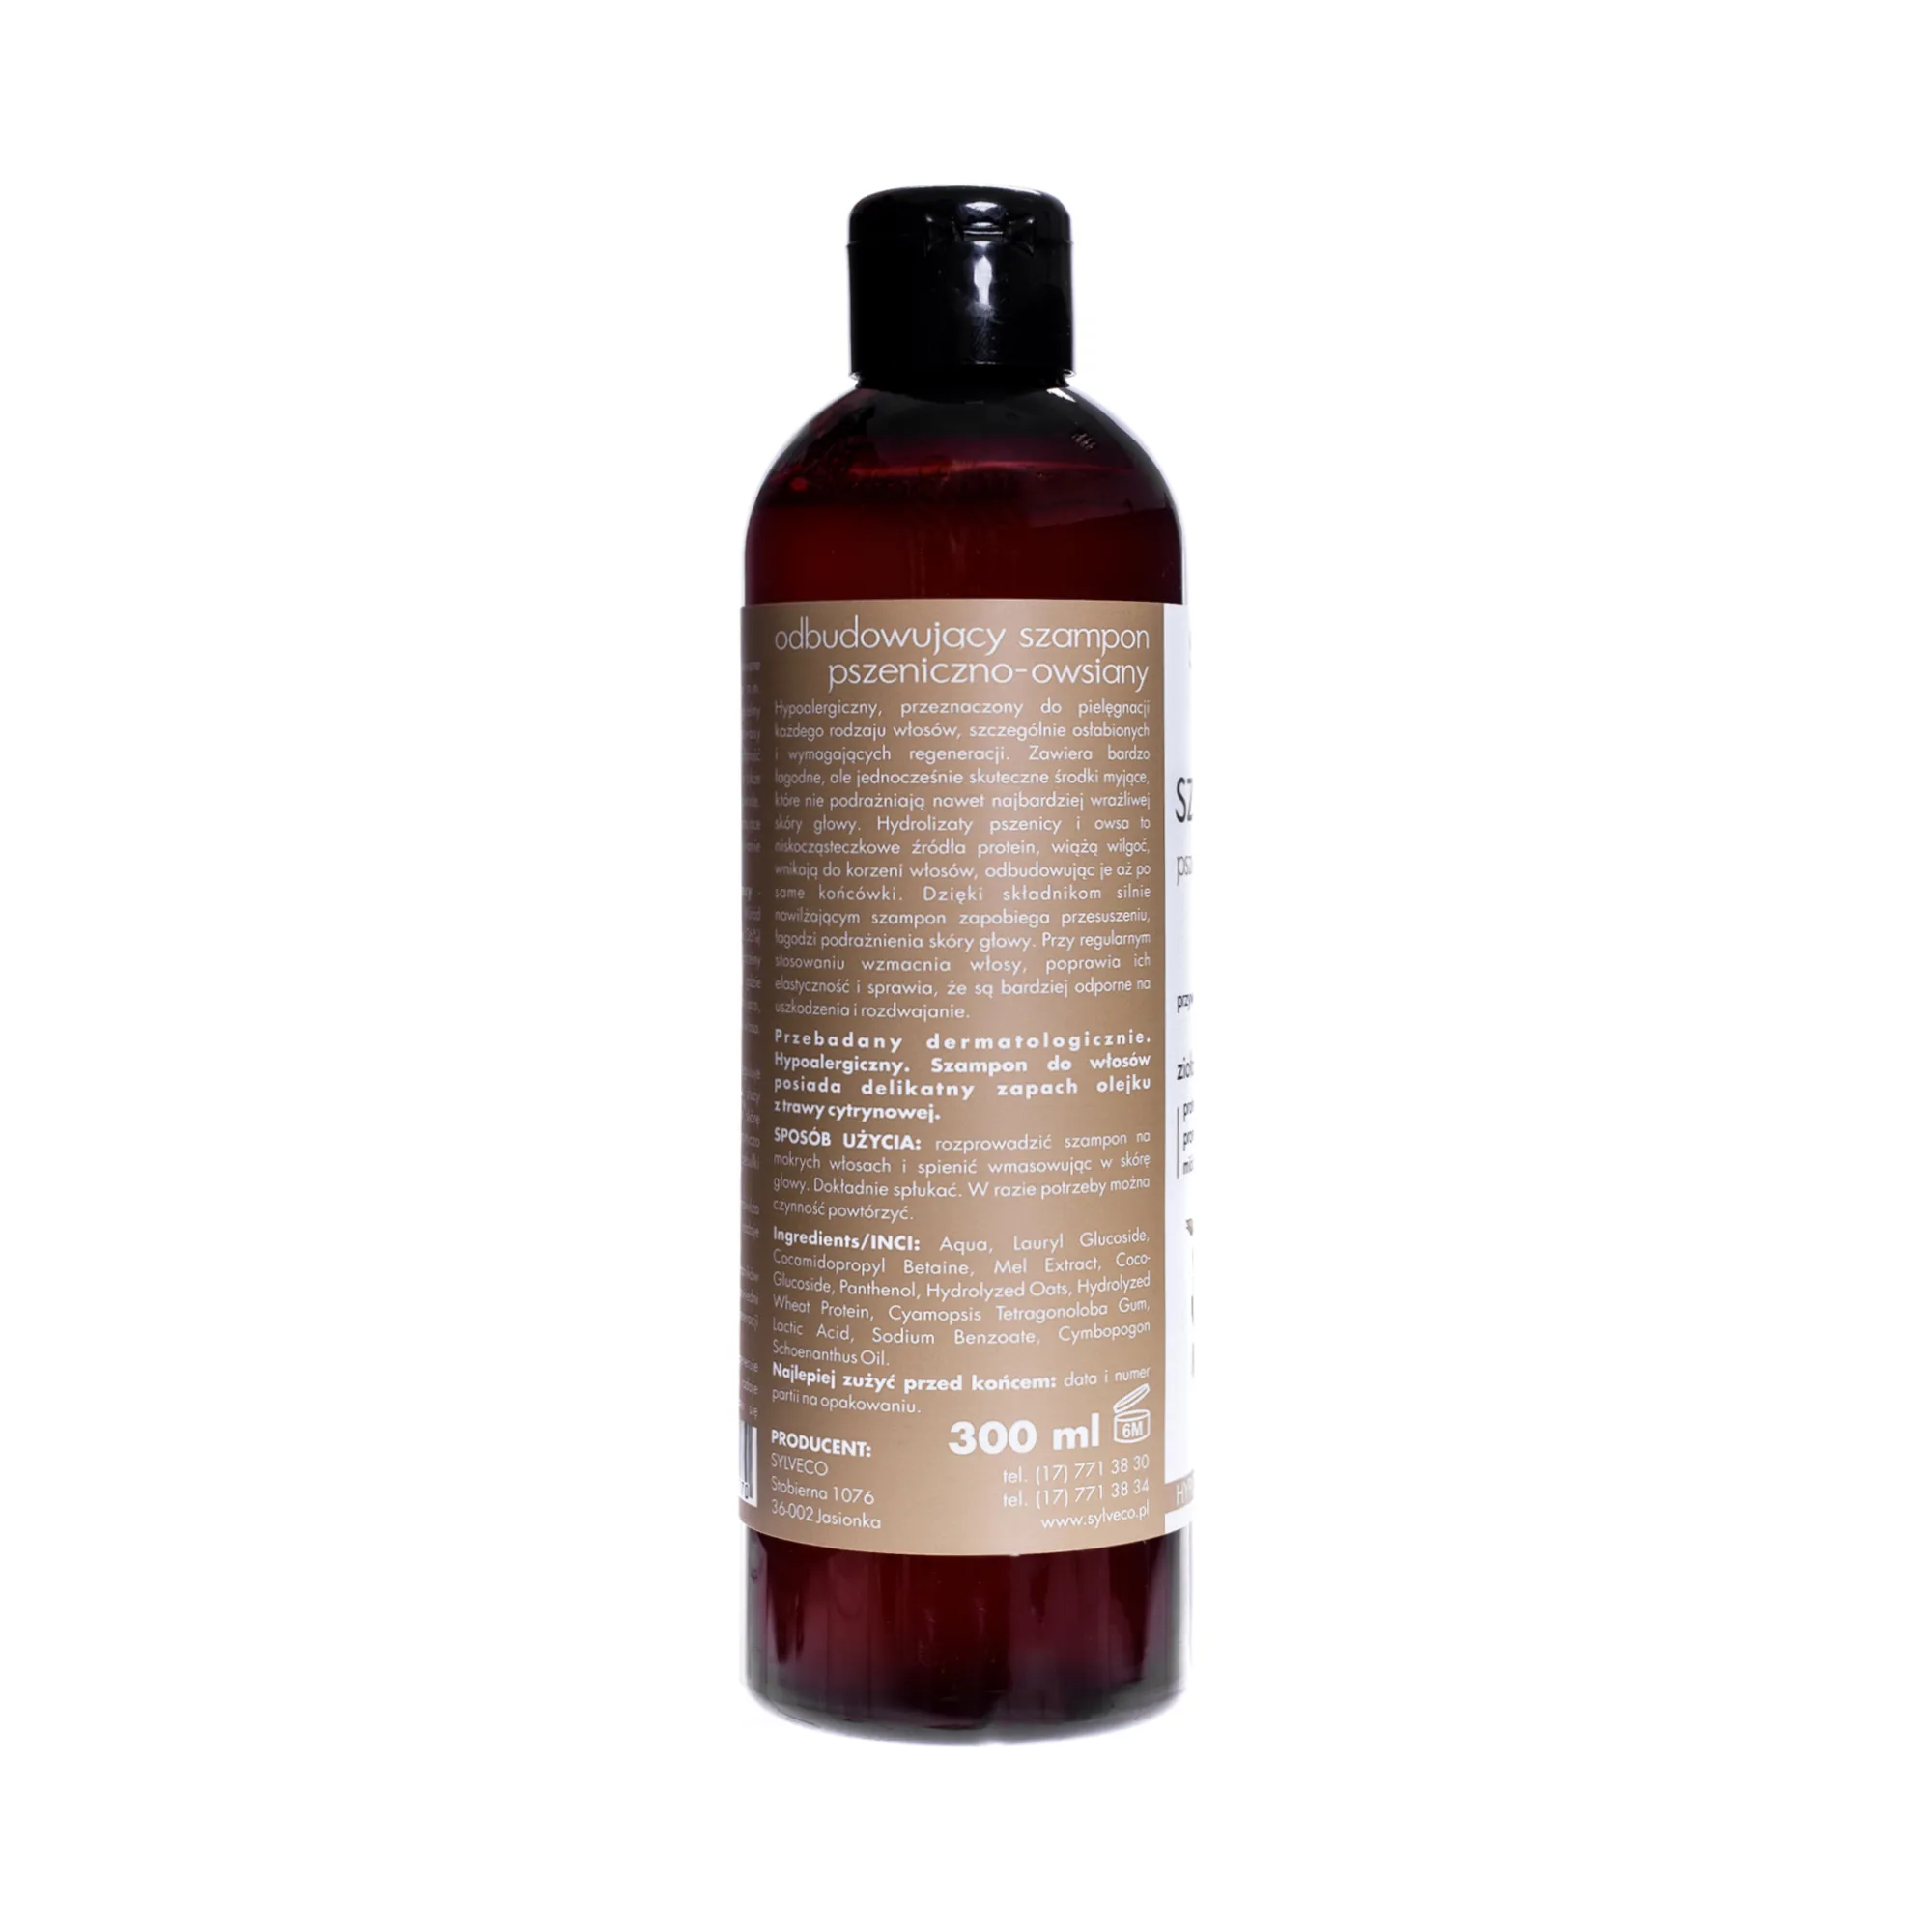 Sylveco,  odbudowujący szampon pszeniczno-owsiany, 300 ml 